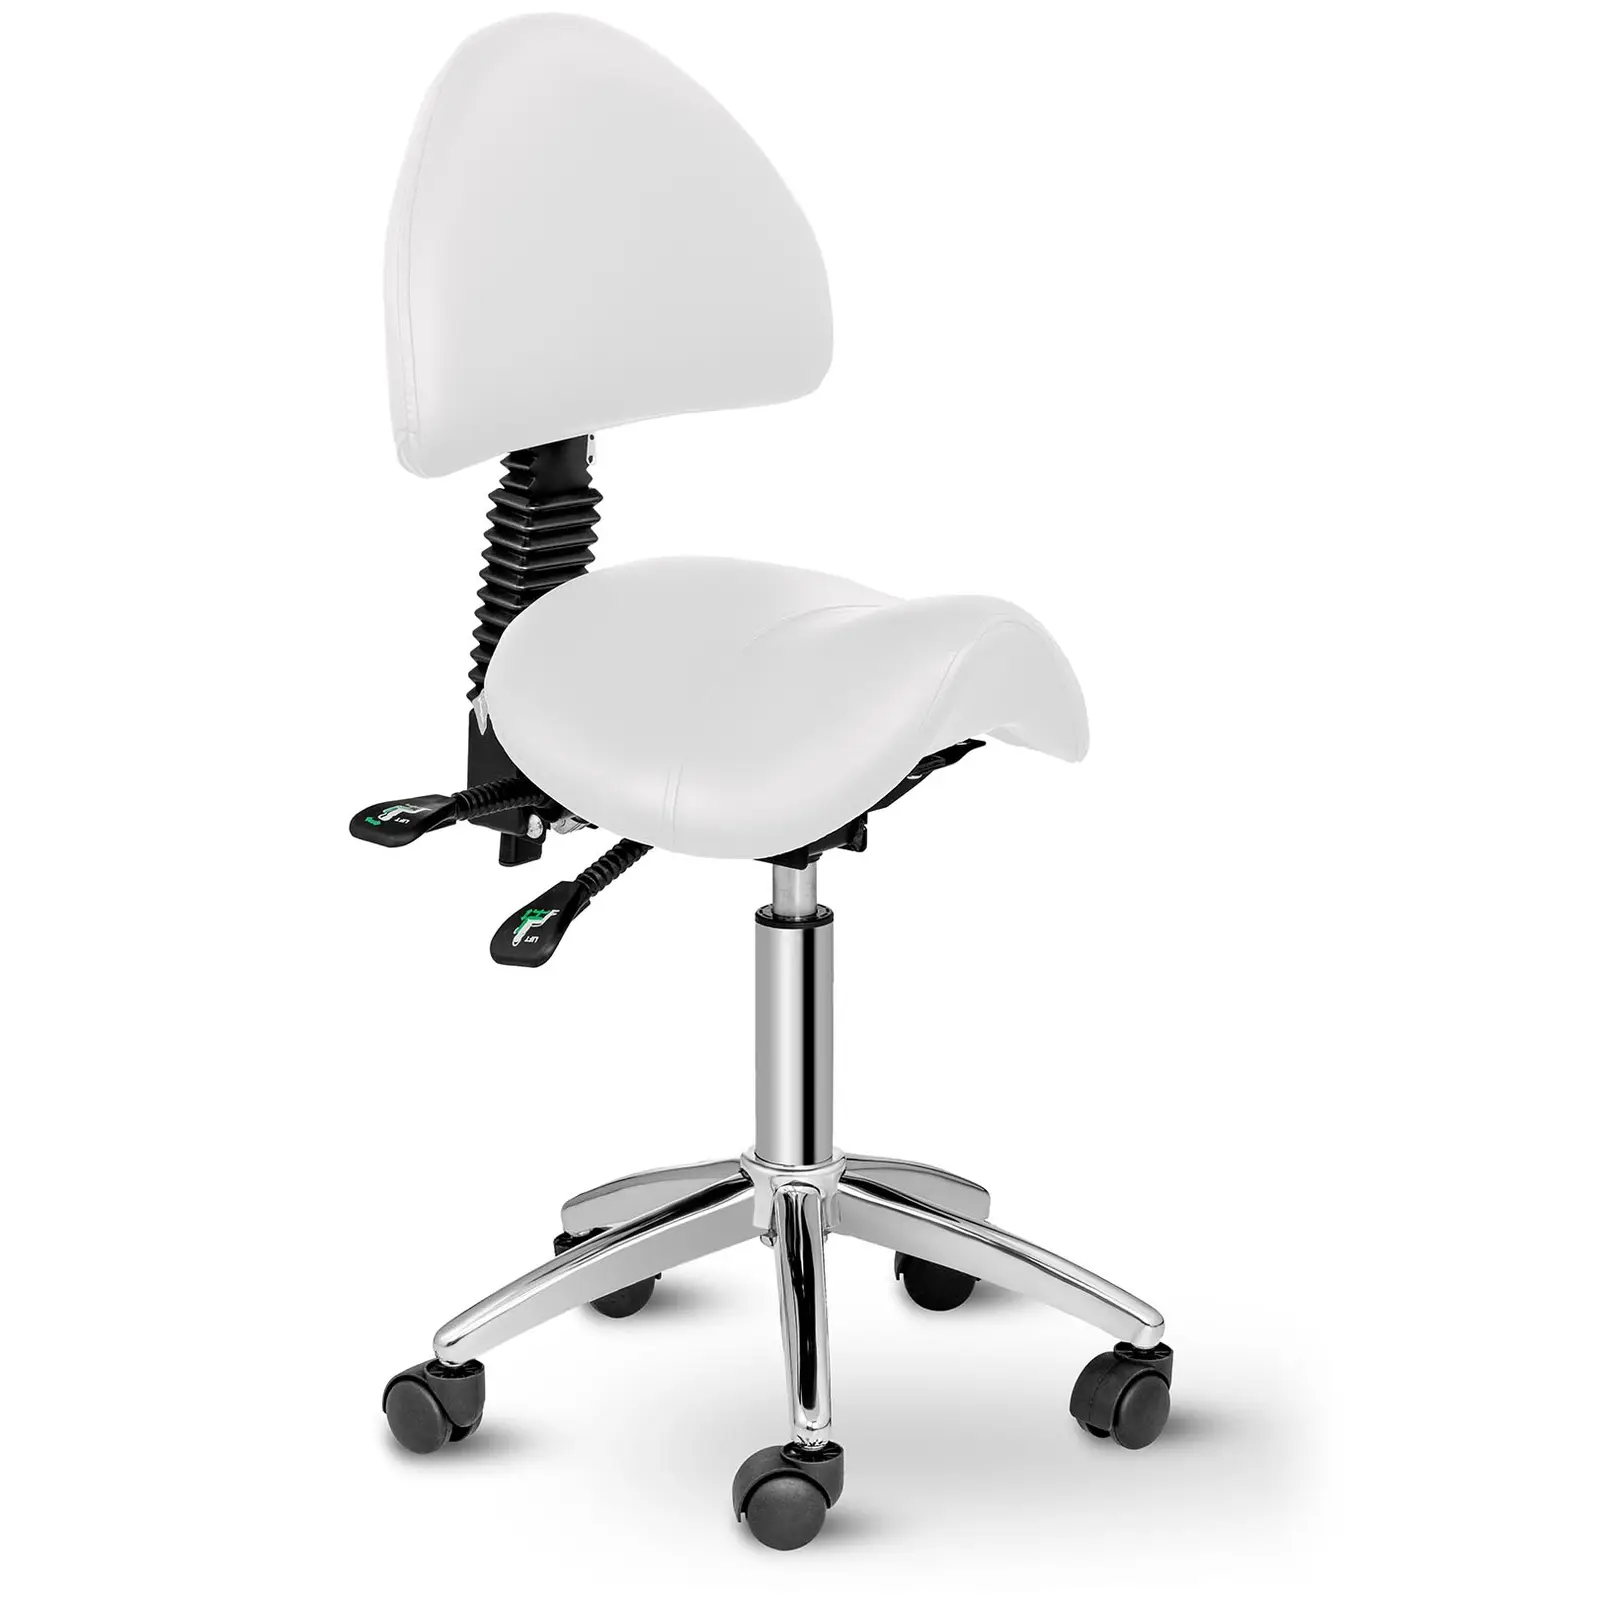 Sedlová židle - 550-690 mm - 150 kg - Bílá